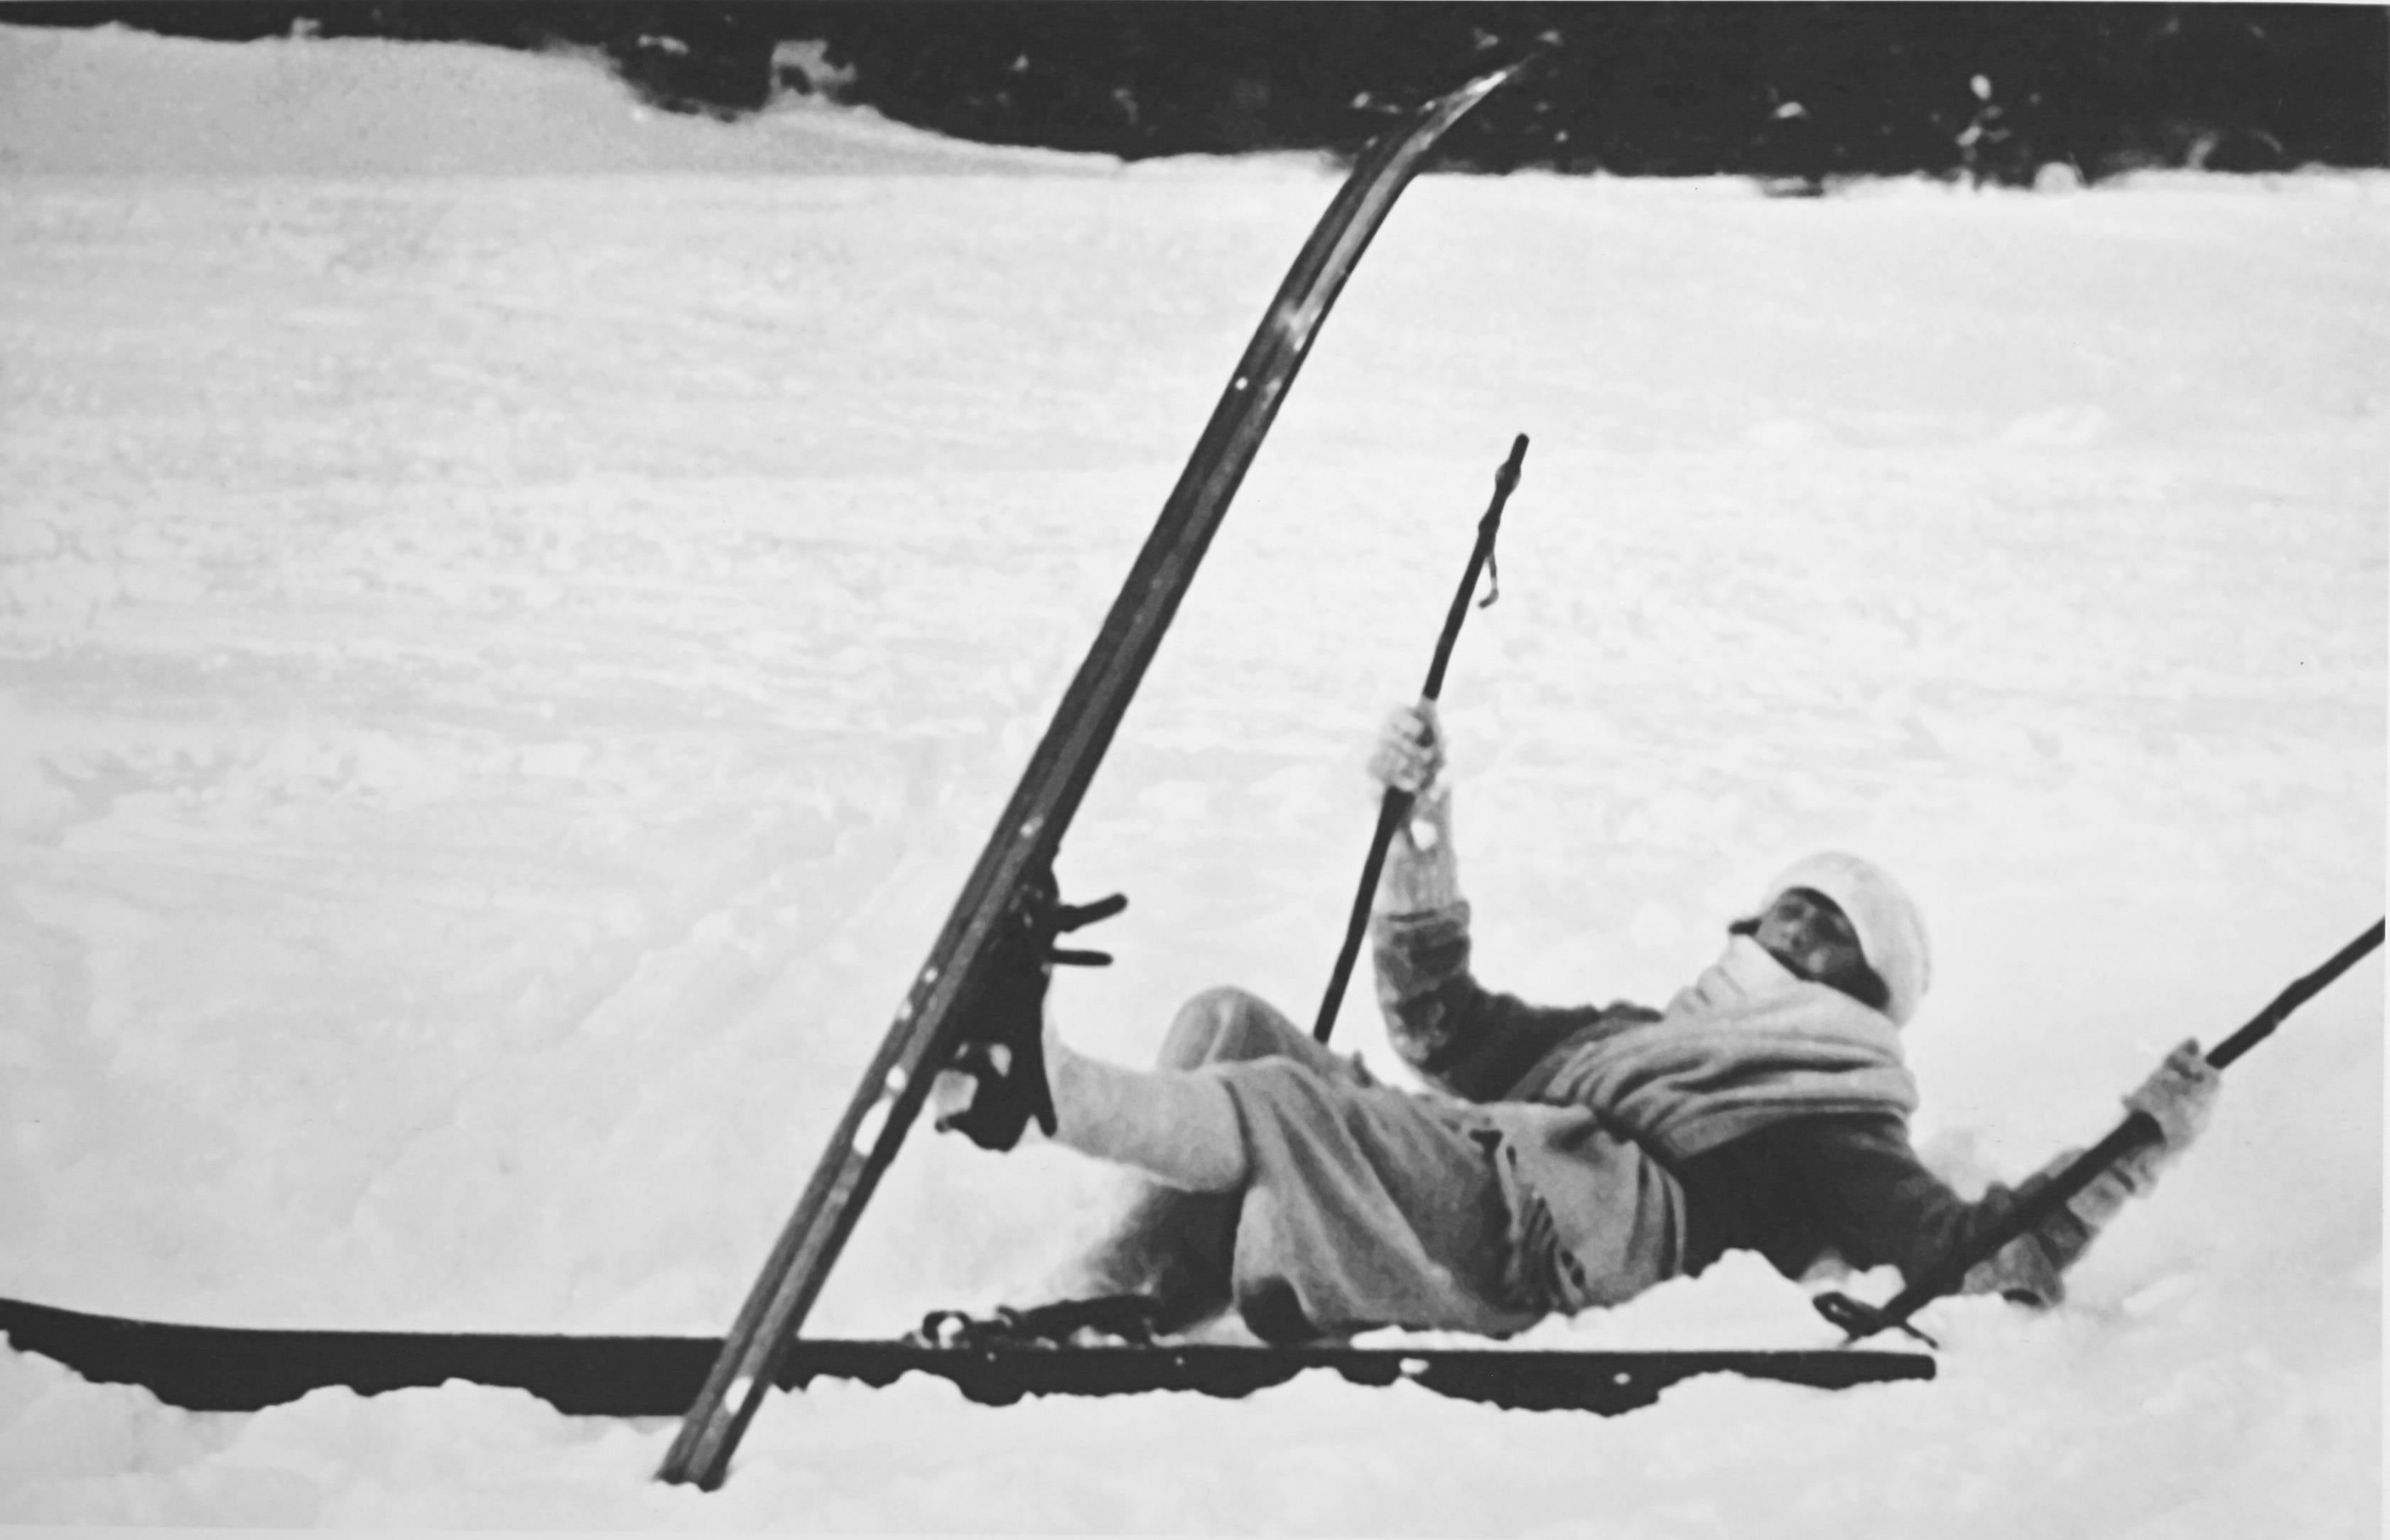 Photographie de ski vintage, photographie ancienne de ski alpin.
OPPS !